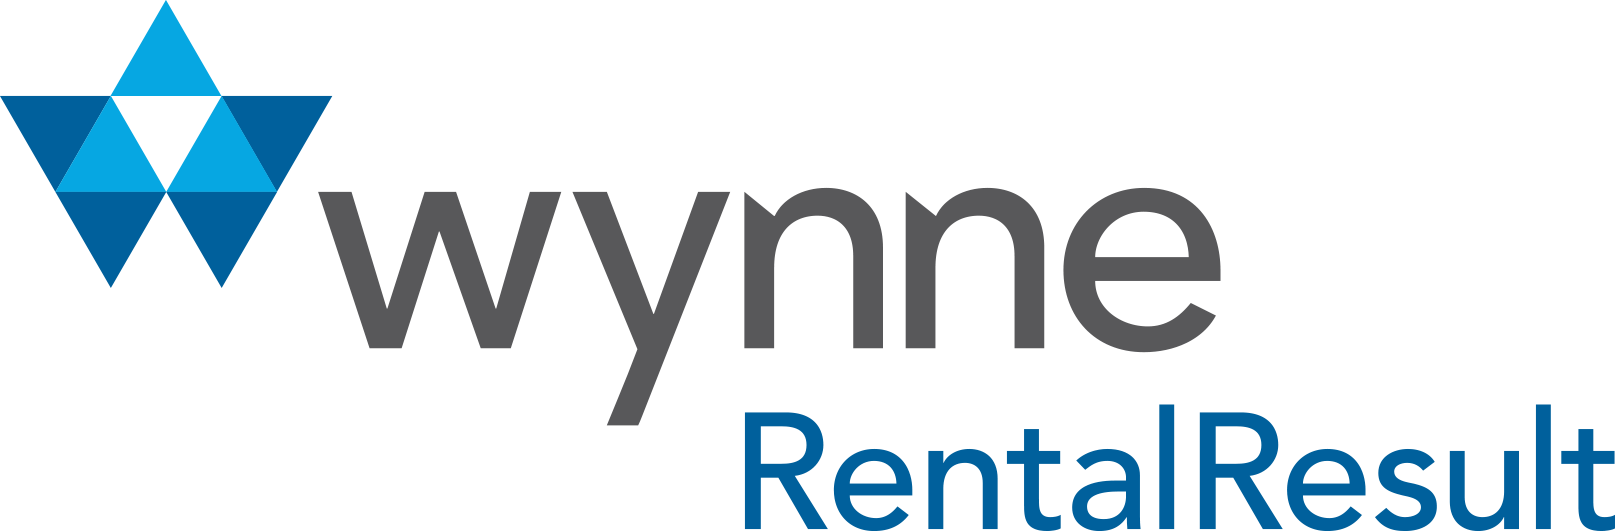 Wynne_RentalResult-1